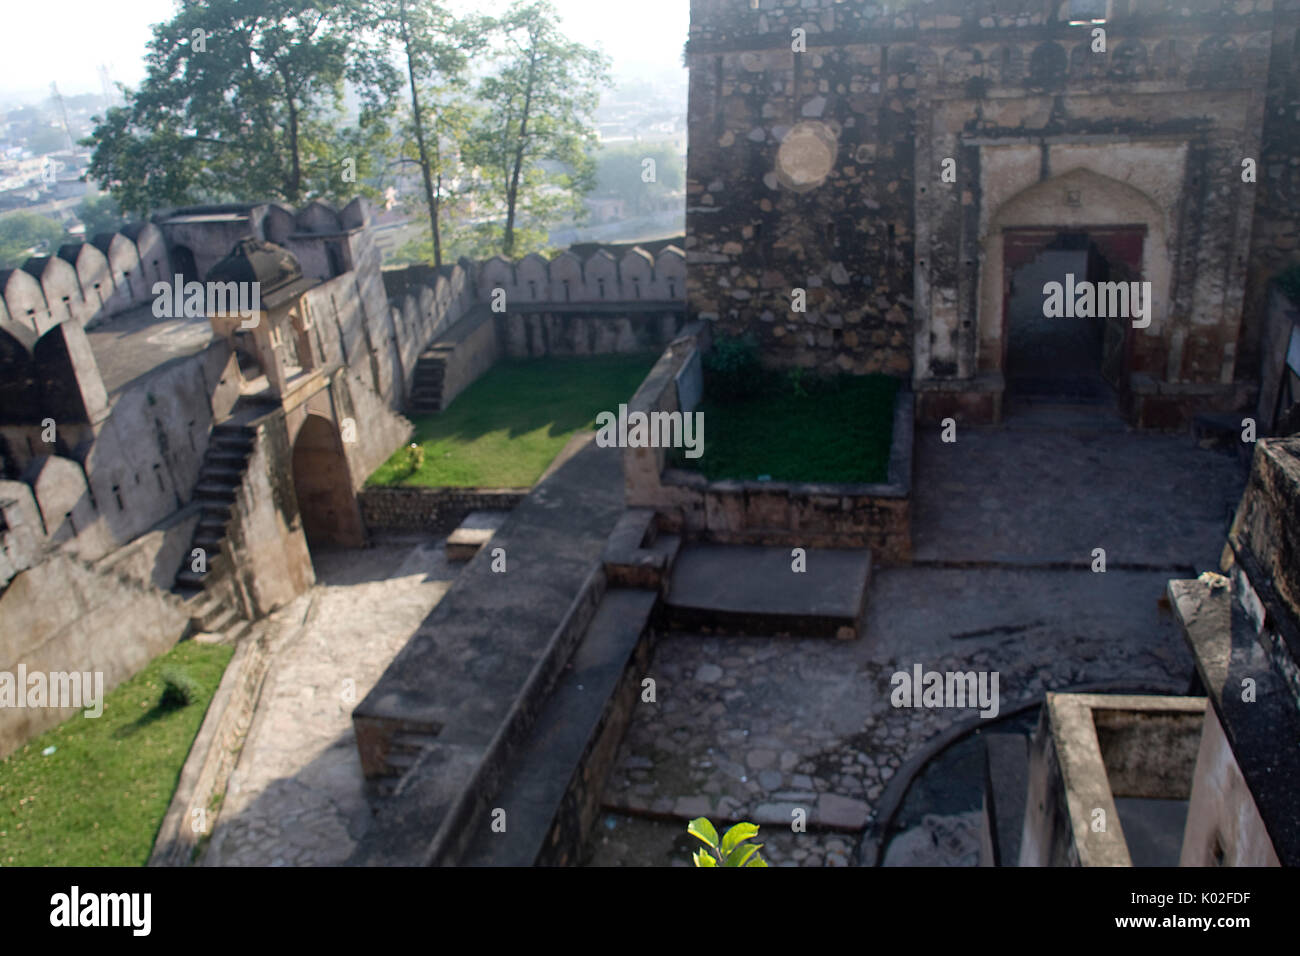 Vista dall'alto del centro storico di Fort presso Jhansi, Uttar Pradesh, India, Asia caricati su 27LUG17 accettati Foto Stock